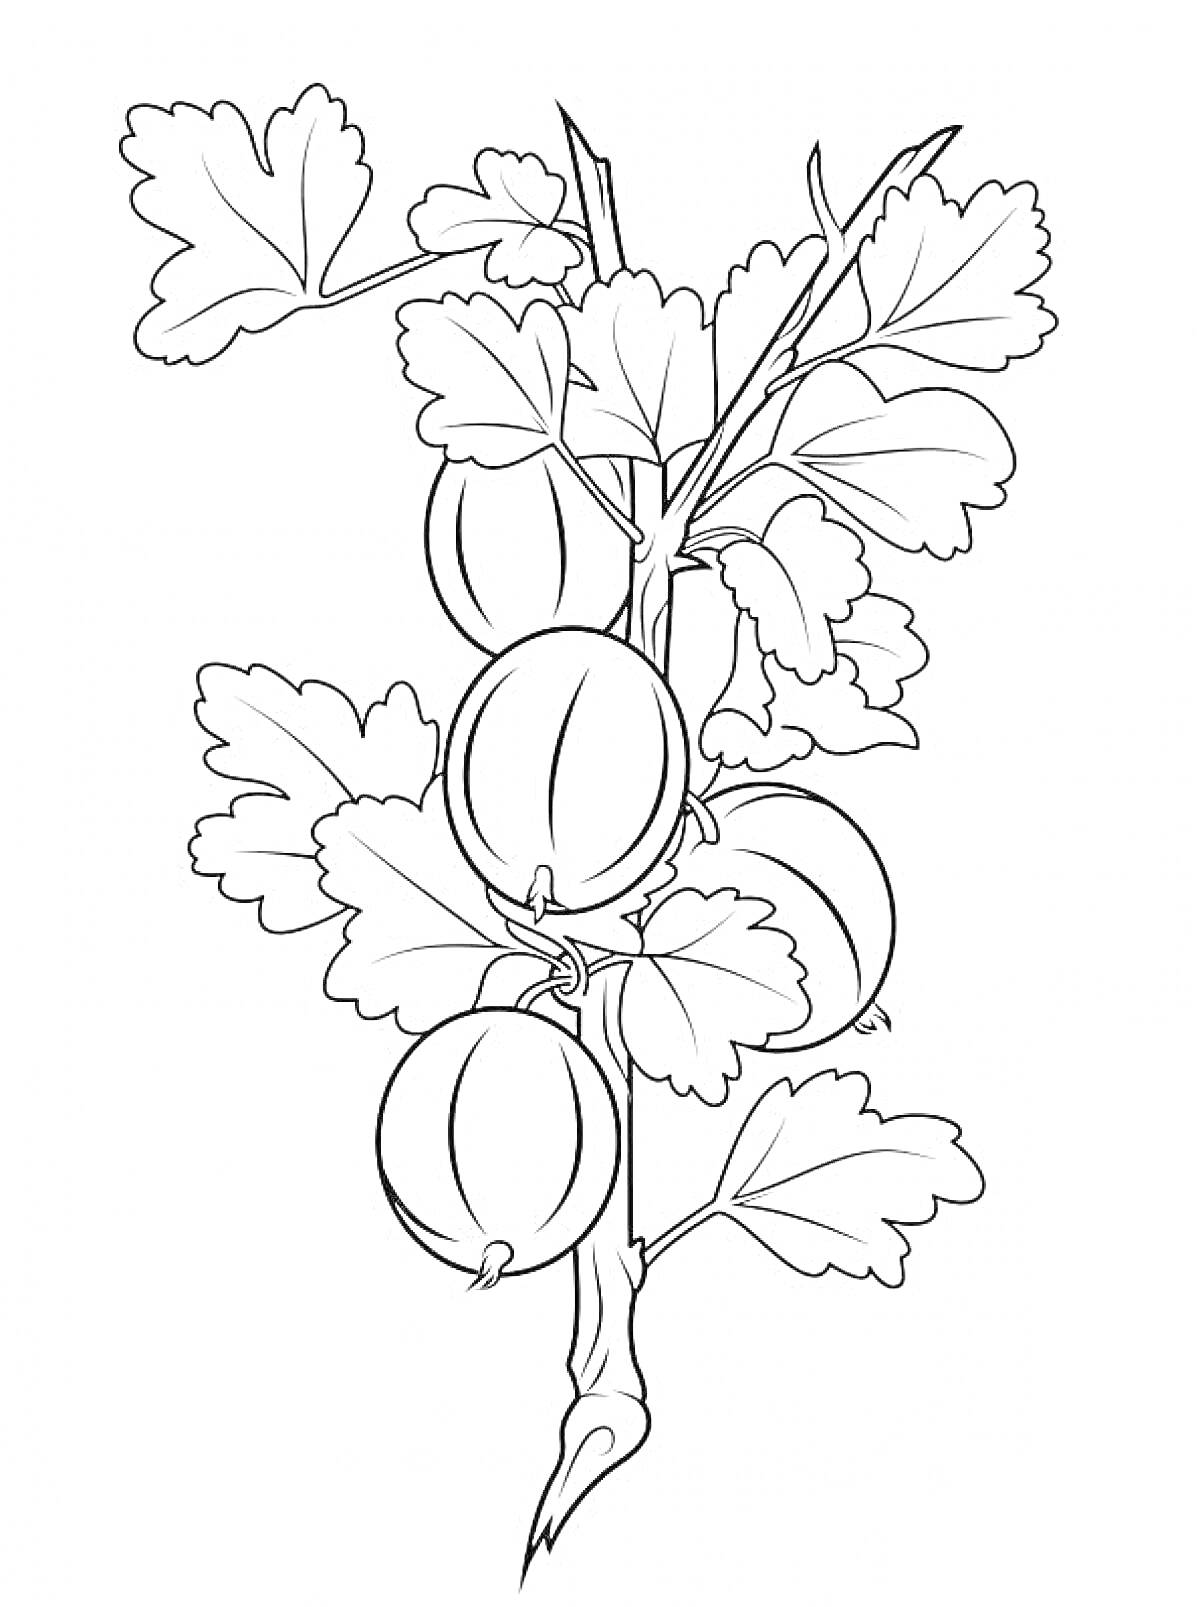 Раскраска Ветвь крыжовника с листьями и плодами